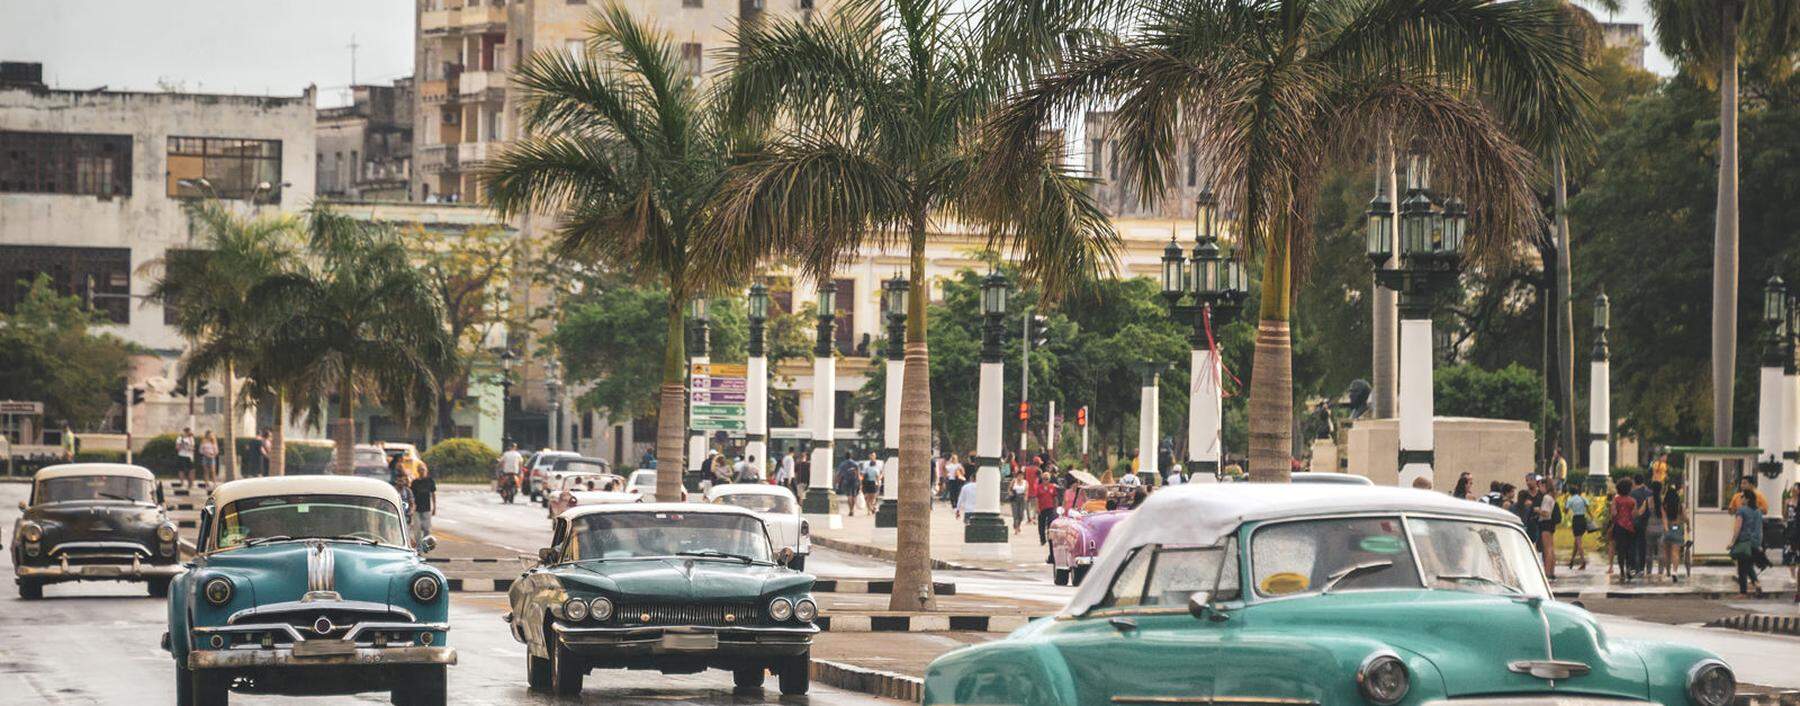 Straßenbild in Havanna, Kuba: Jahrzehntelang kamen keine neuen Autos auf die Insel. So wurde der Fahrzeugbestand aus den 1950ern notgedrungen am Laufen gehalten.